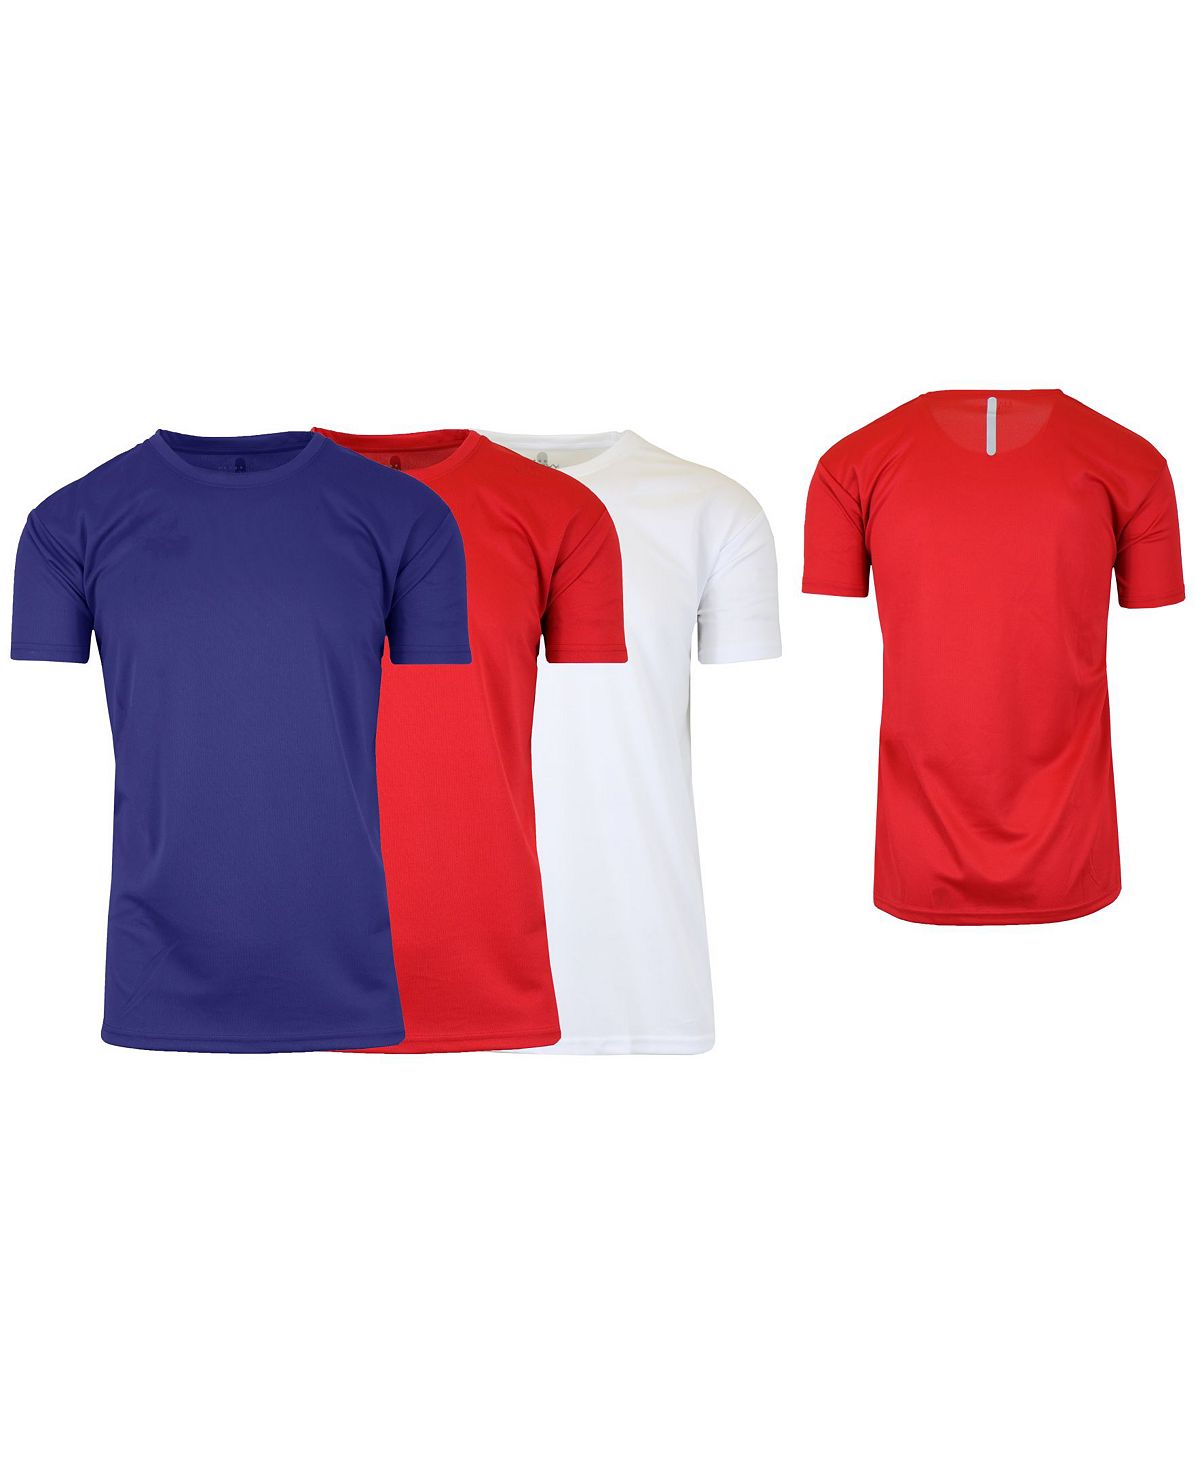 цена Мужская быстросохнущая влагоотводящая футболка с короткими рукавами, 3 шт. Galaxy By Harvic